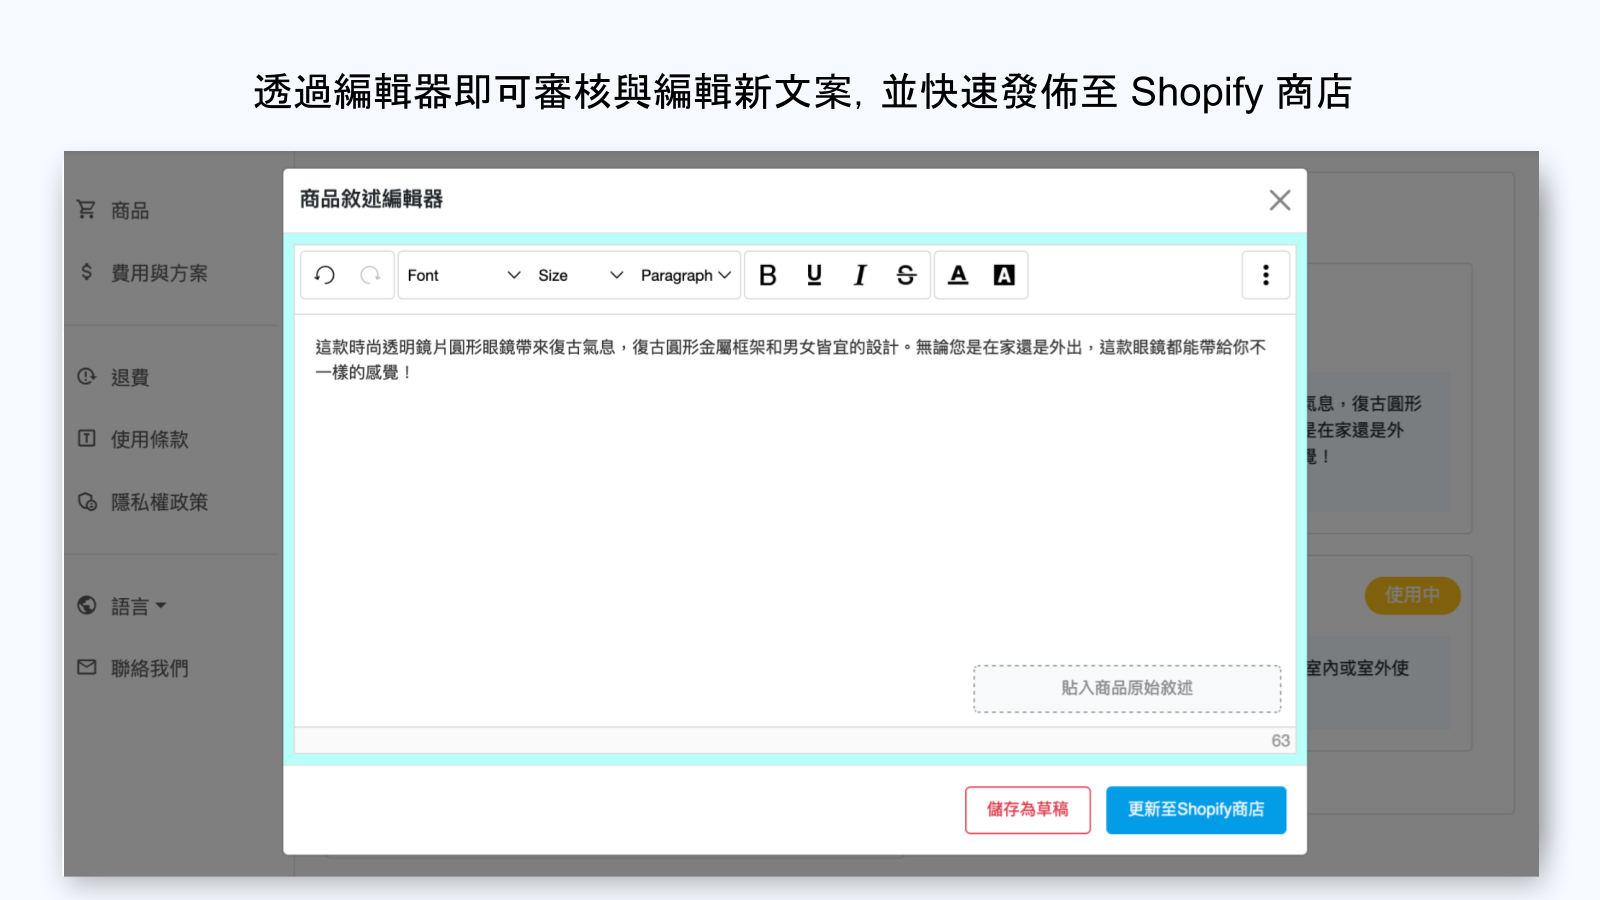 透過編輯器快速發佈新文案至Shopify商店